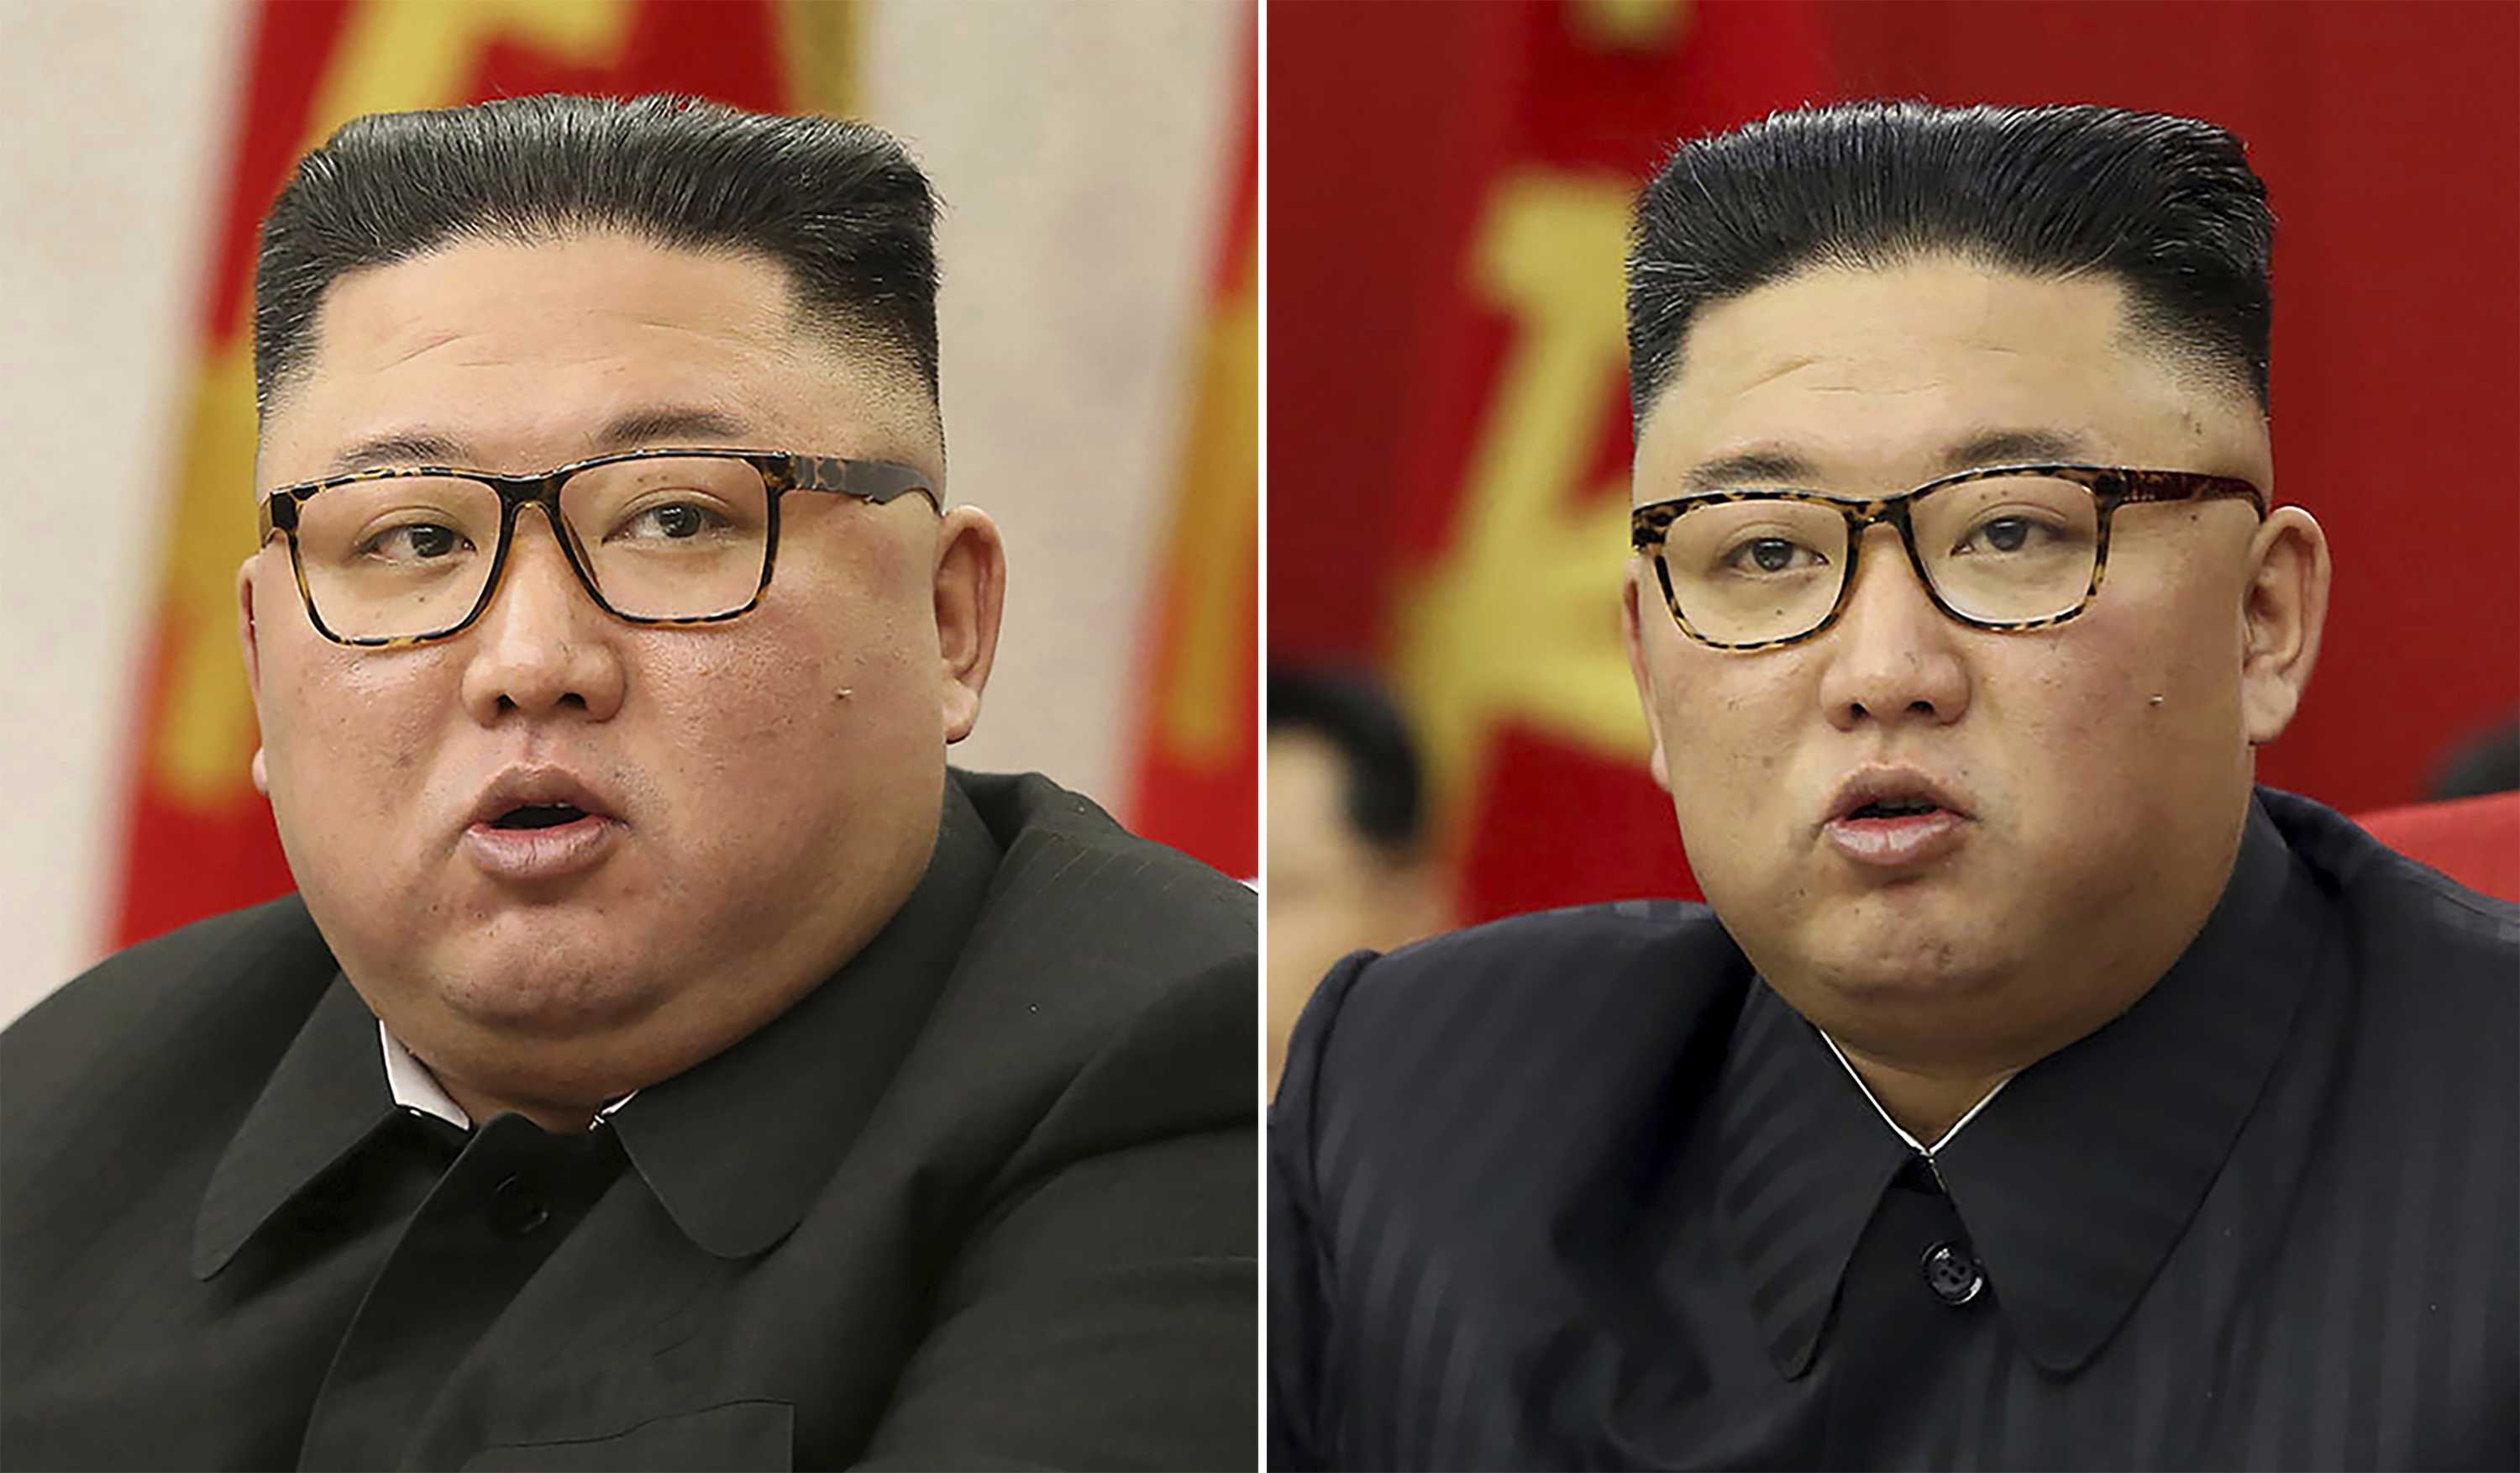 Ким чен ир - биография, личная жизнь, смерть, фото и последние новости - 24сми